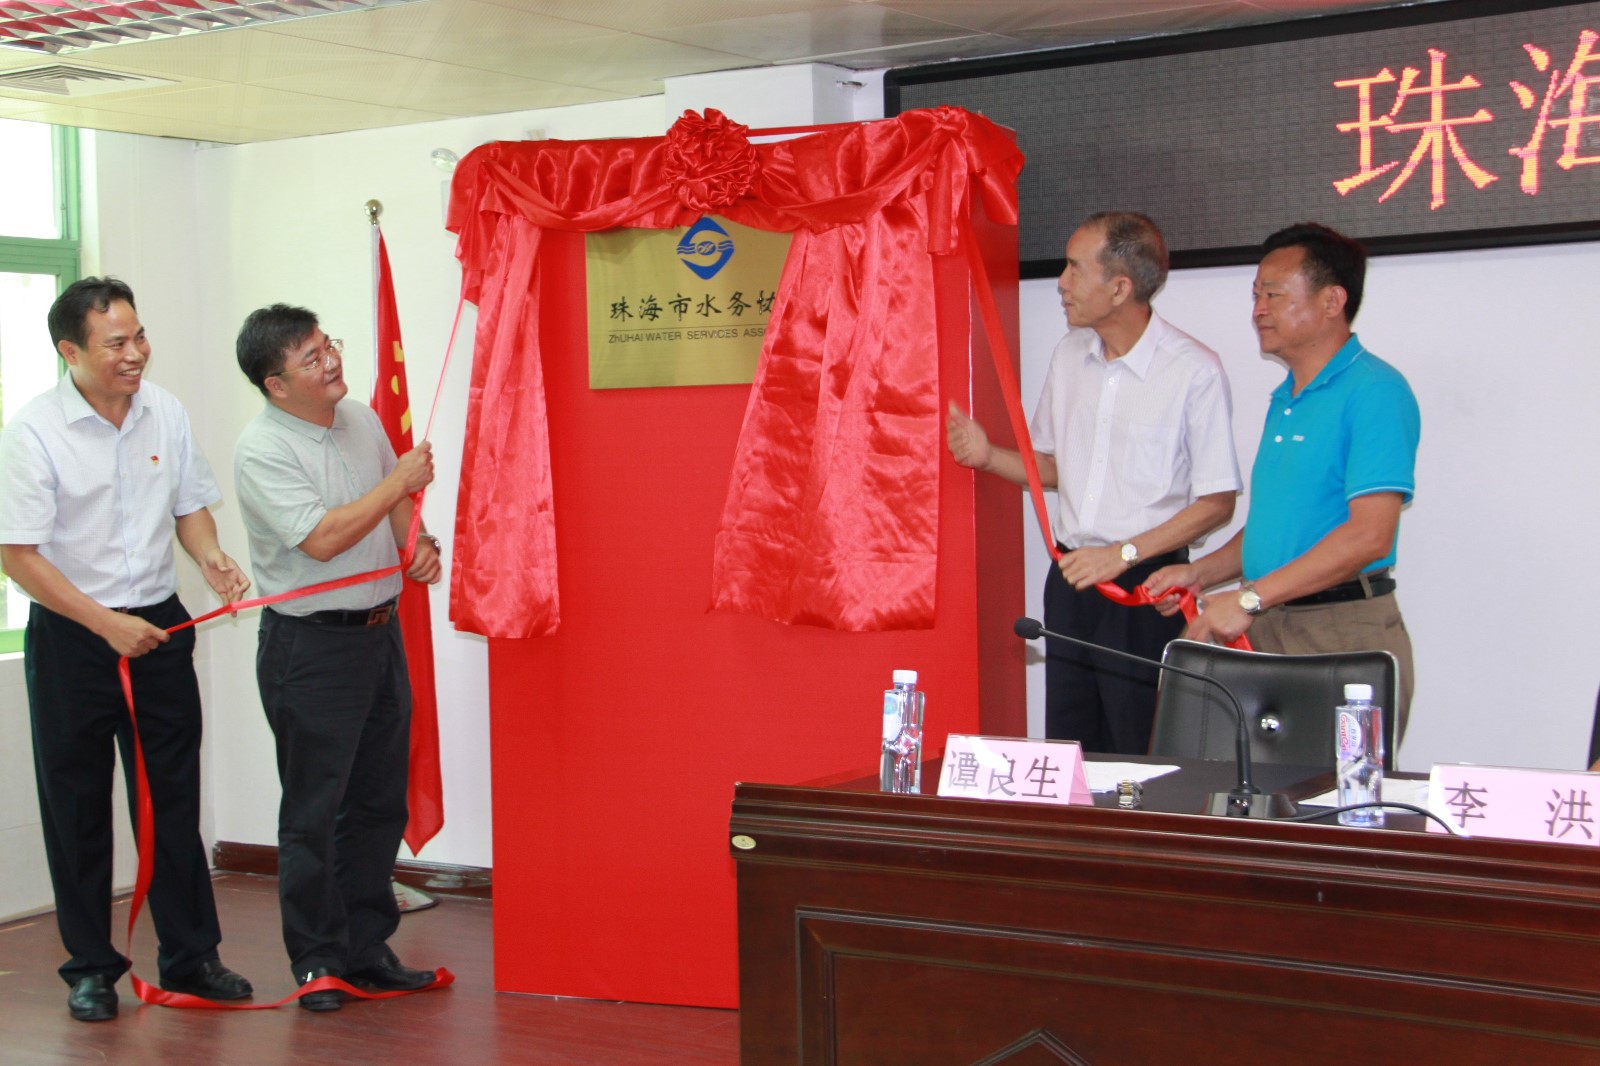 林粤海局长、王电波副局长、廖德钦会长、谭良生会长为珠海市水务协会揭牌.